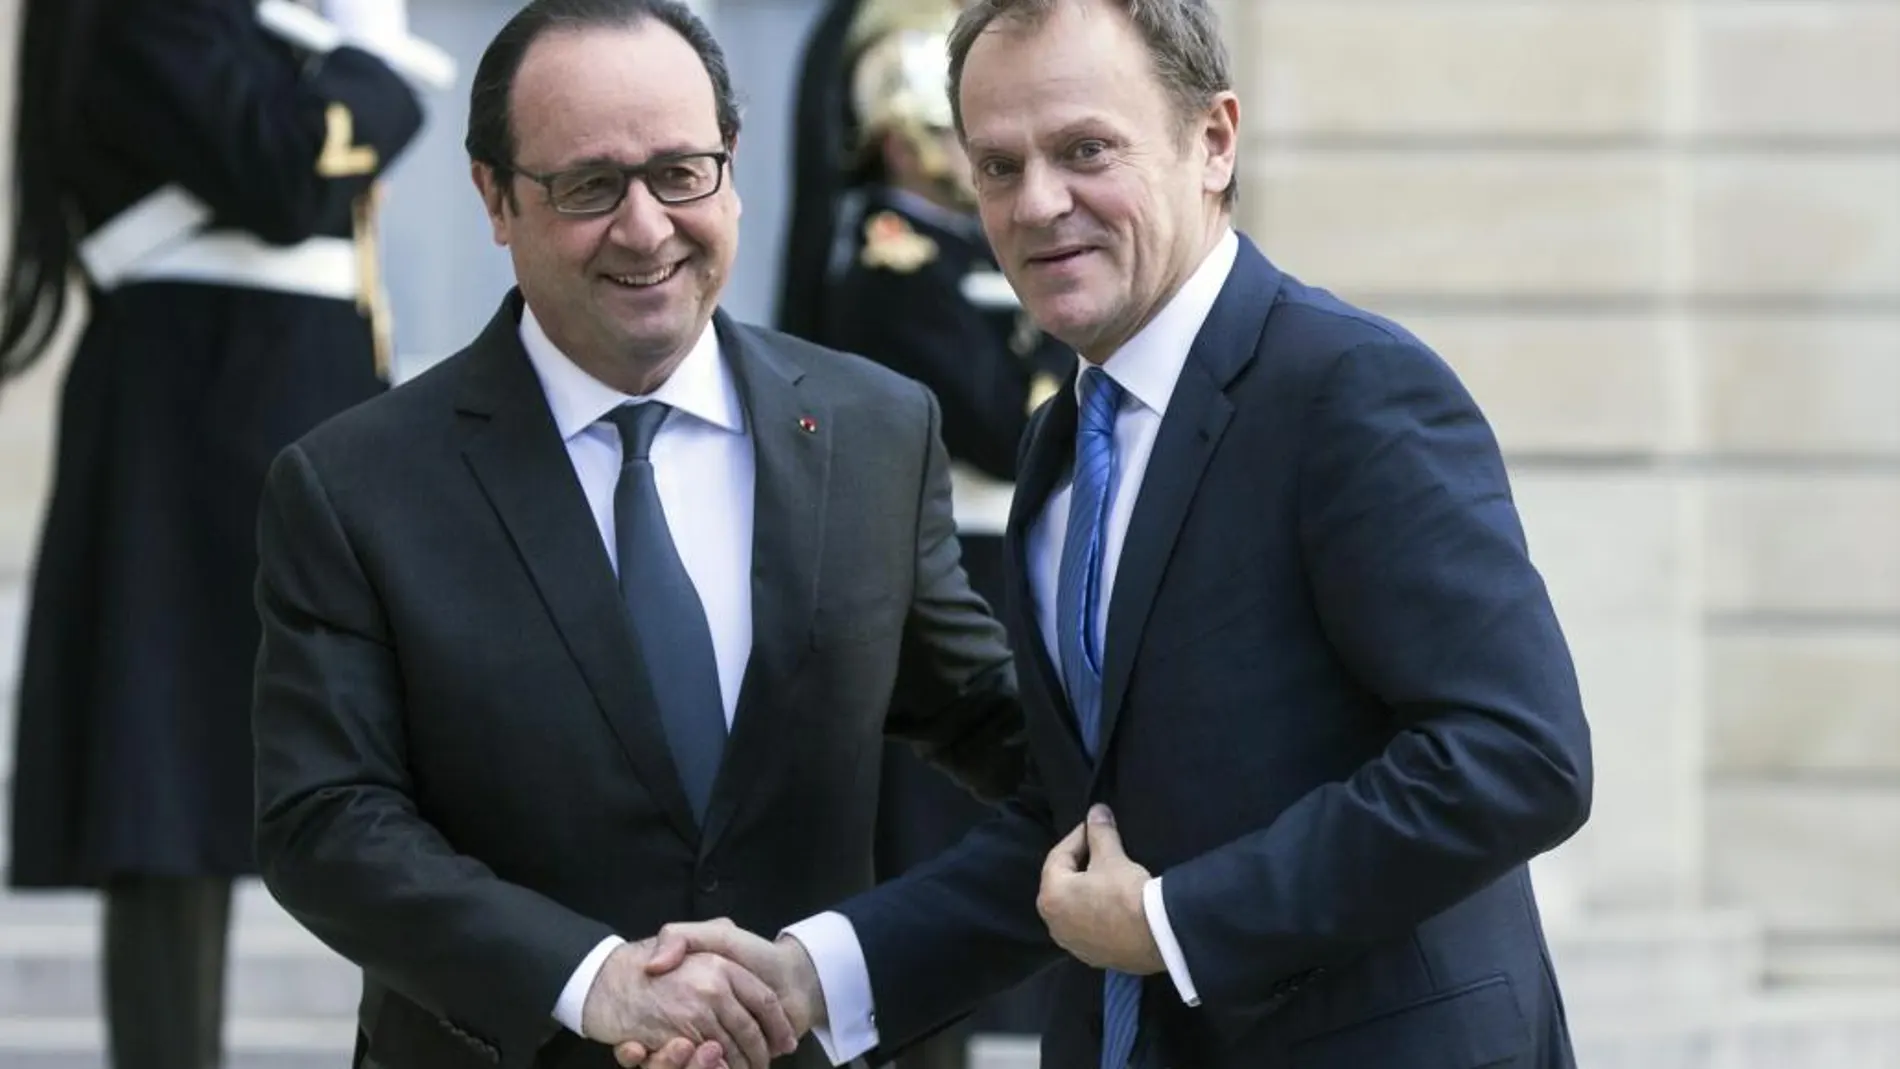 El presidente francés, François Hollande, recibe al presidente del Consejo Europeo, Donald Tusk, a su llegada al Palacio del Elíseo en París